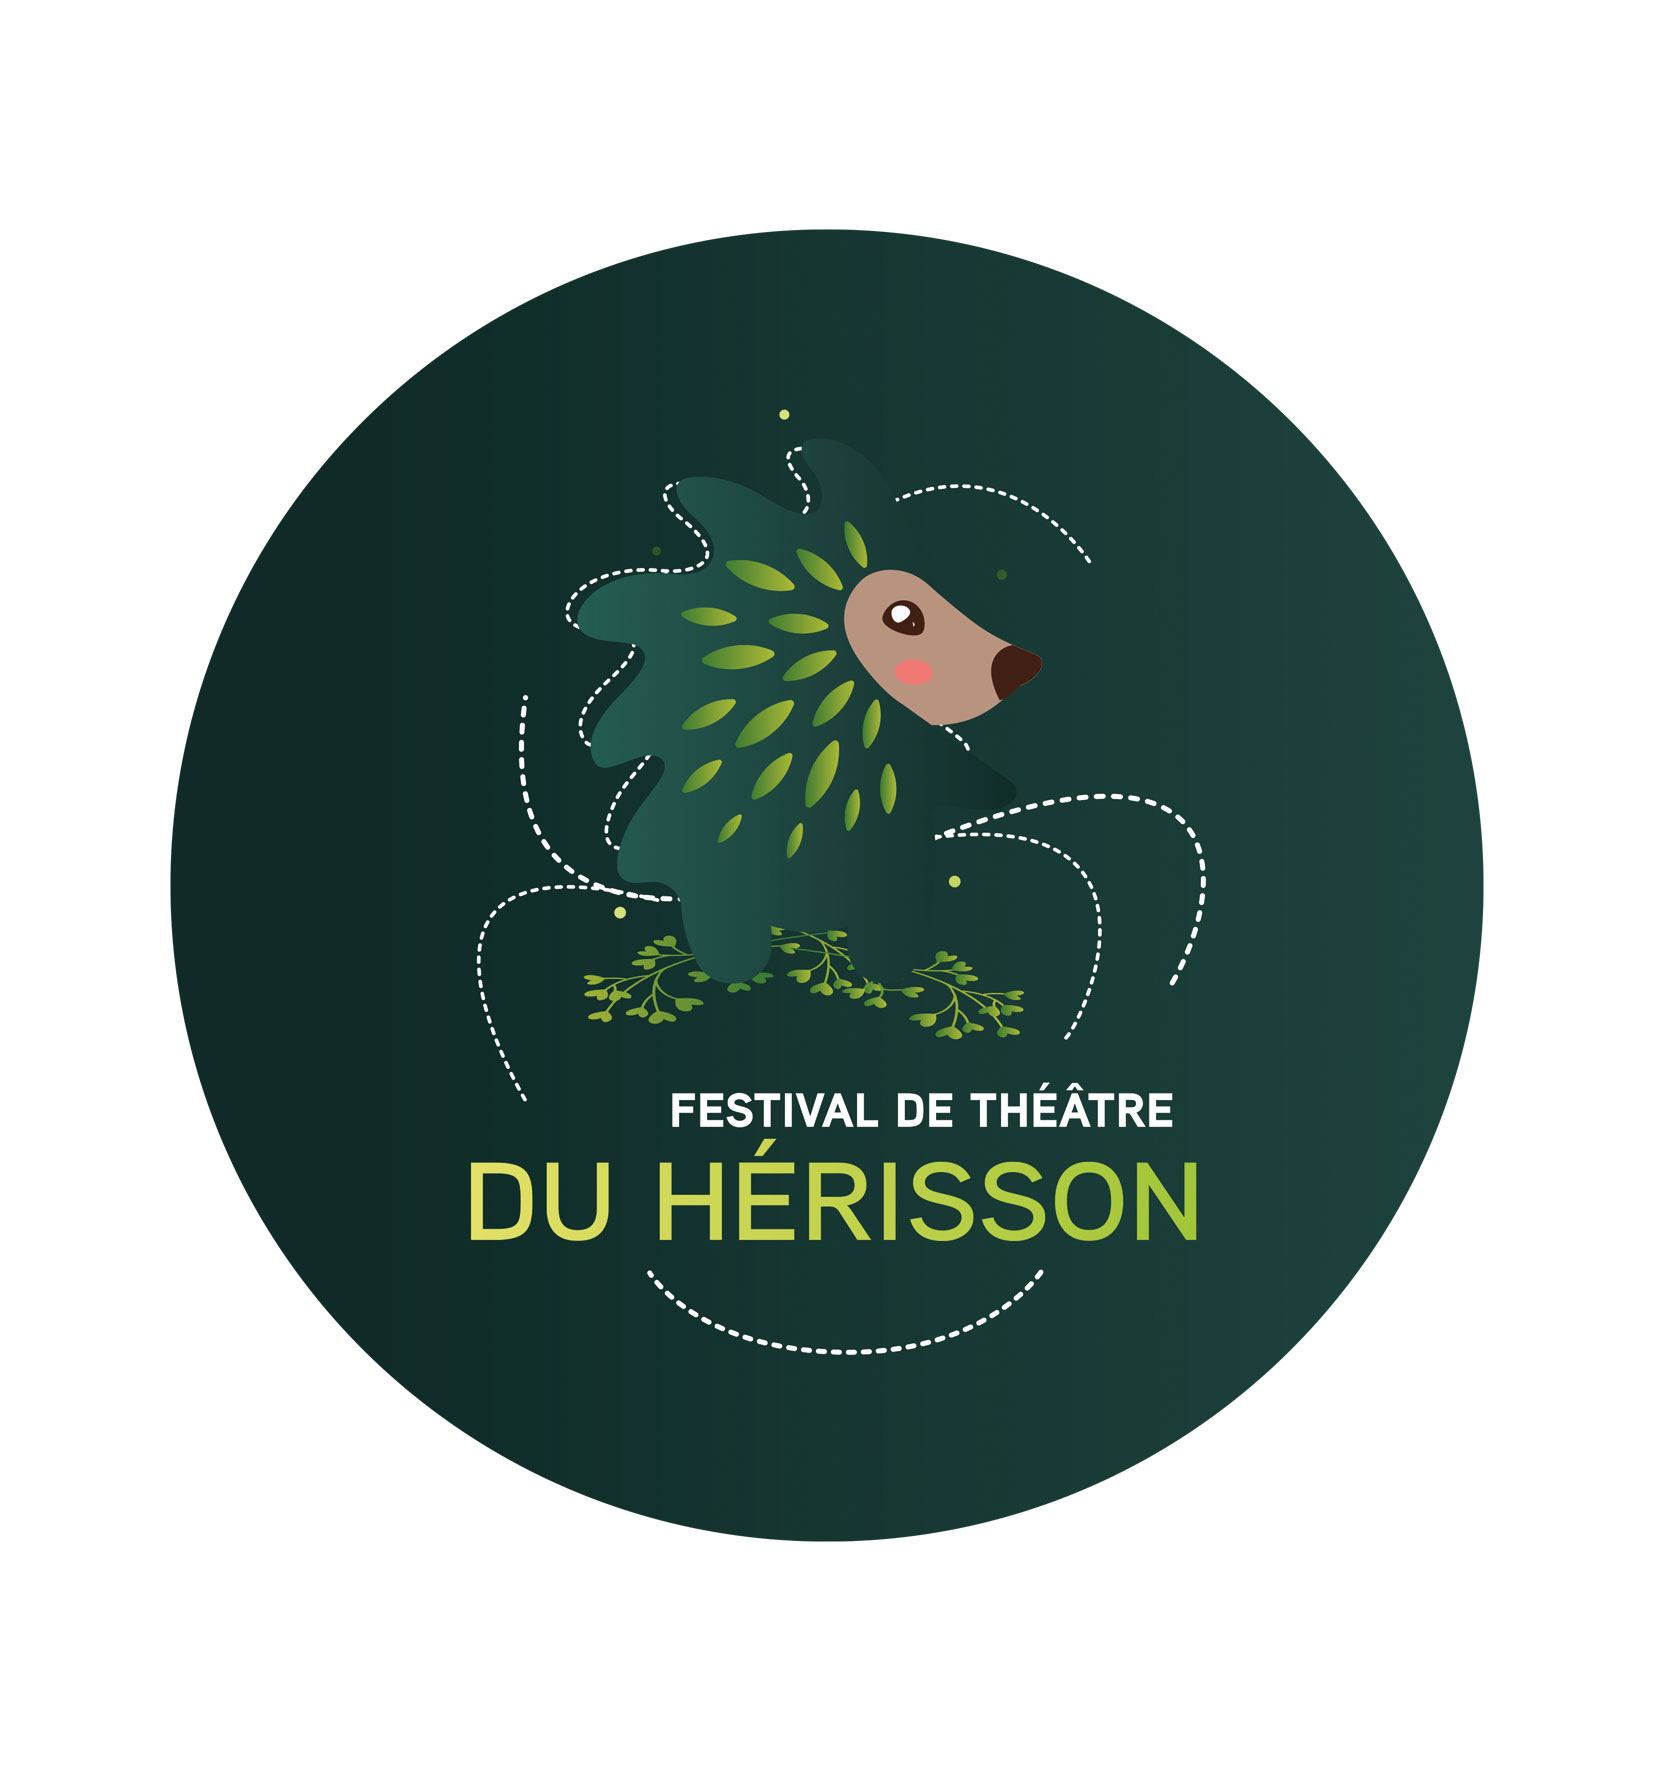 Festival de Théâtre du Hérisson, Favicon sur fond de dégradé vert avec la mascotte hérisson mignon